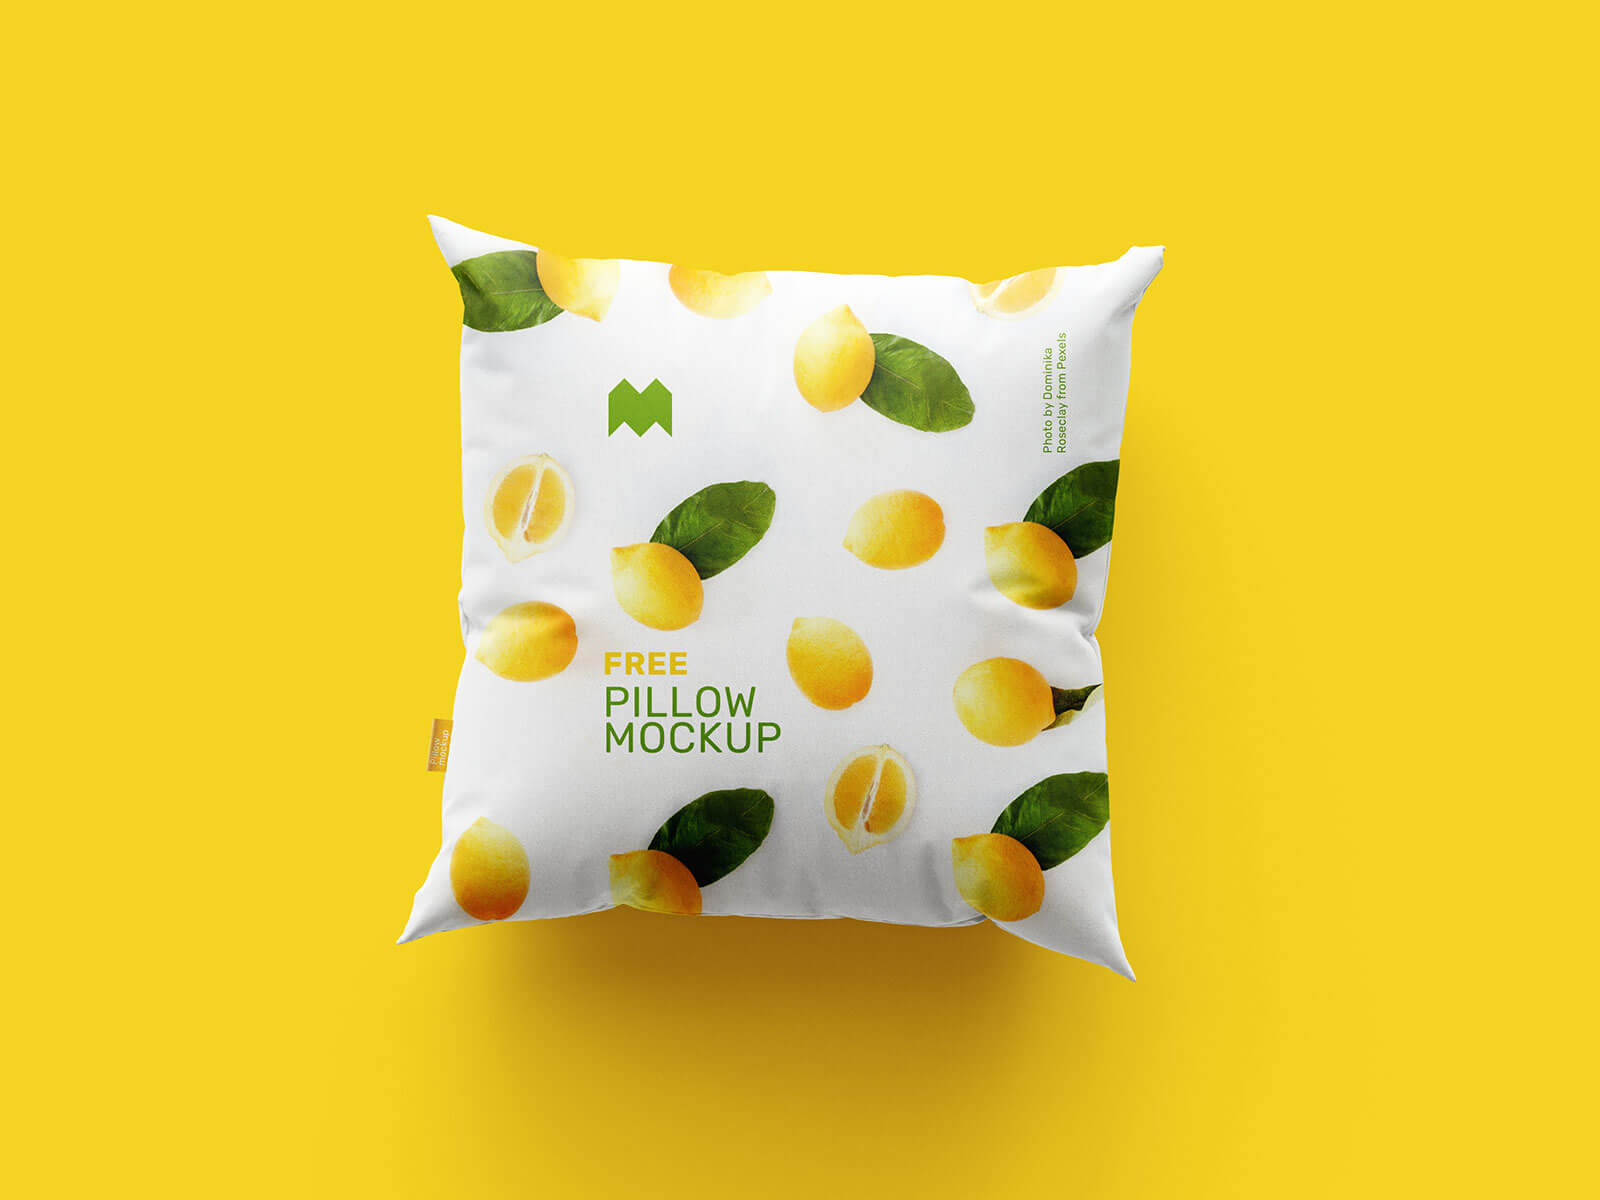 Free Square Cushion Pillow Mockup PSD Set